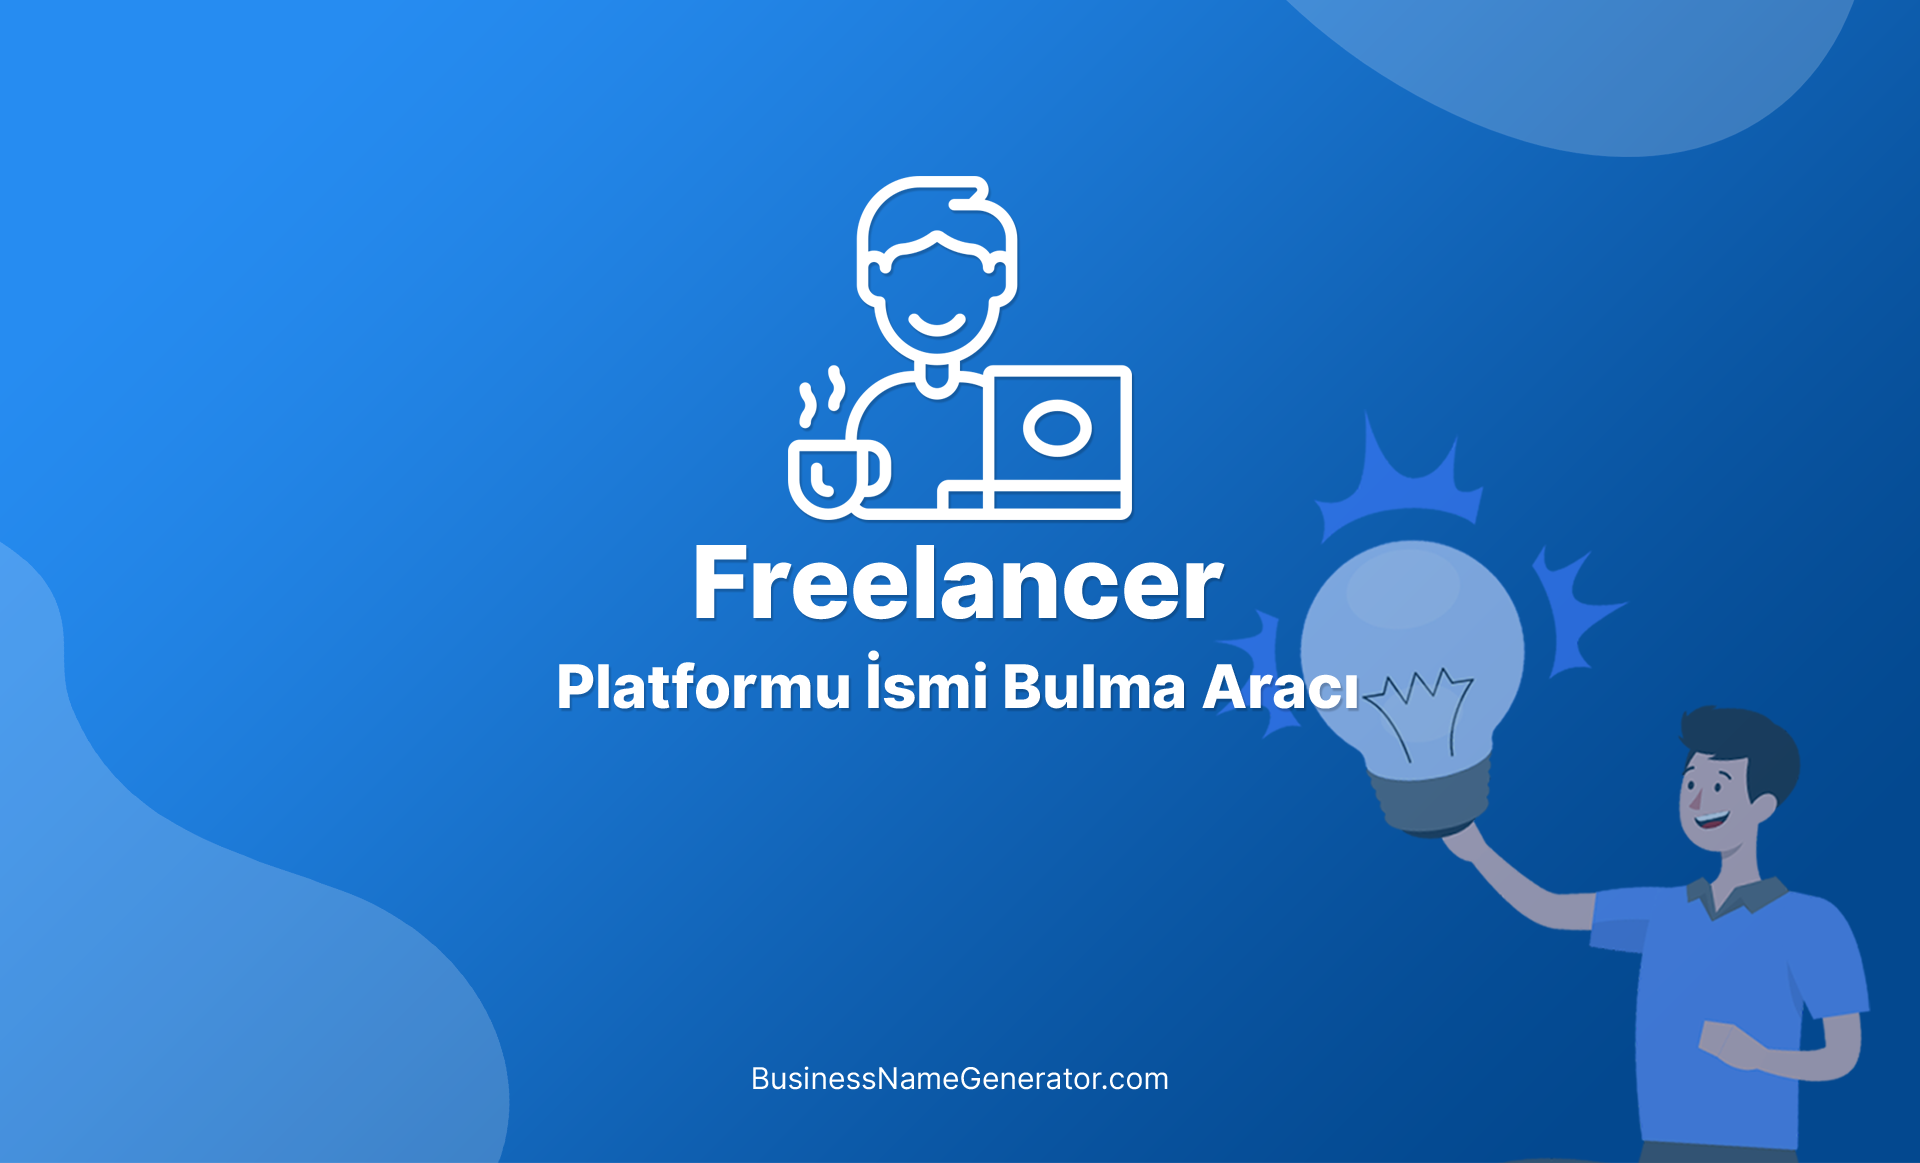 Freelancer Platformu İsmi Bulma Aracı